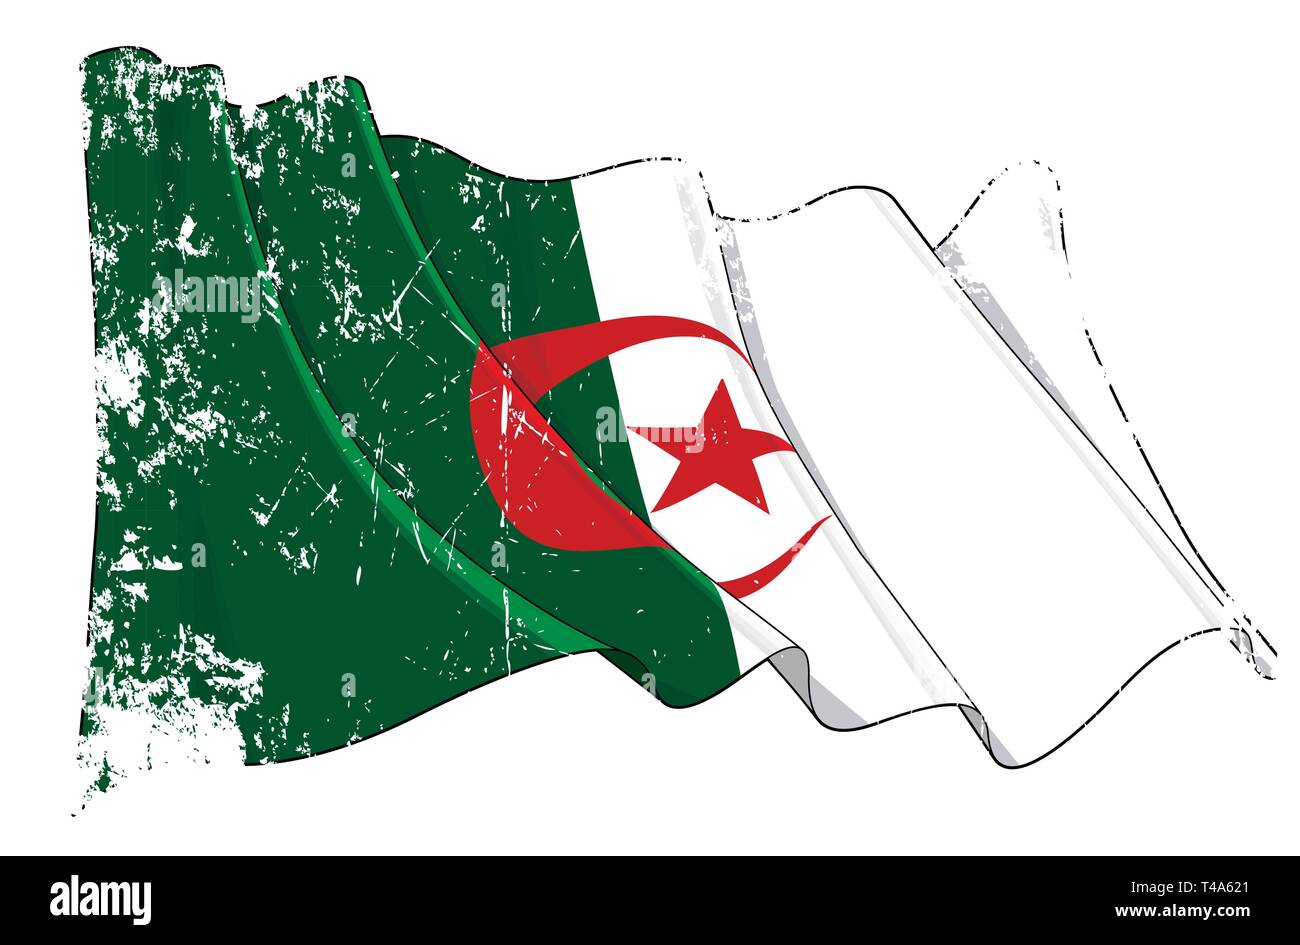 Vektor texturierte Grunge Abbildung: Wehende Flagge Algerien. Alle Elemente problemlos auf gut definierten Schichten und Gruppen. Stock Vektor